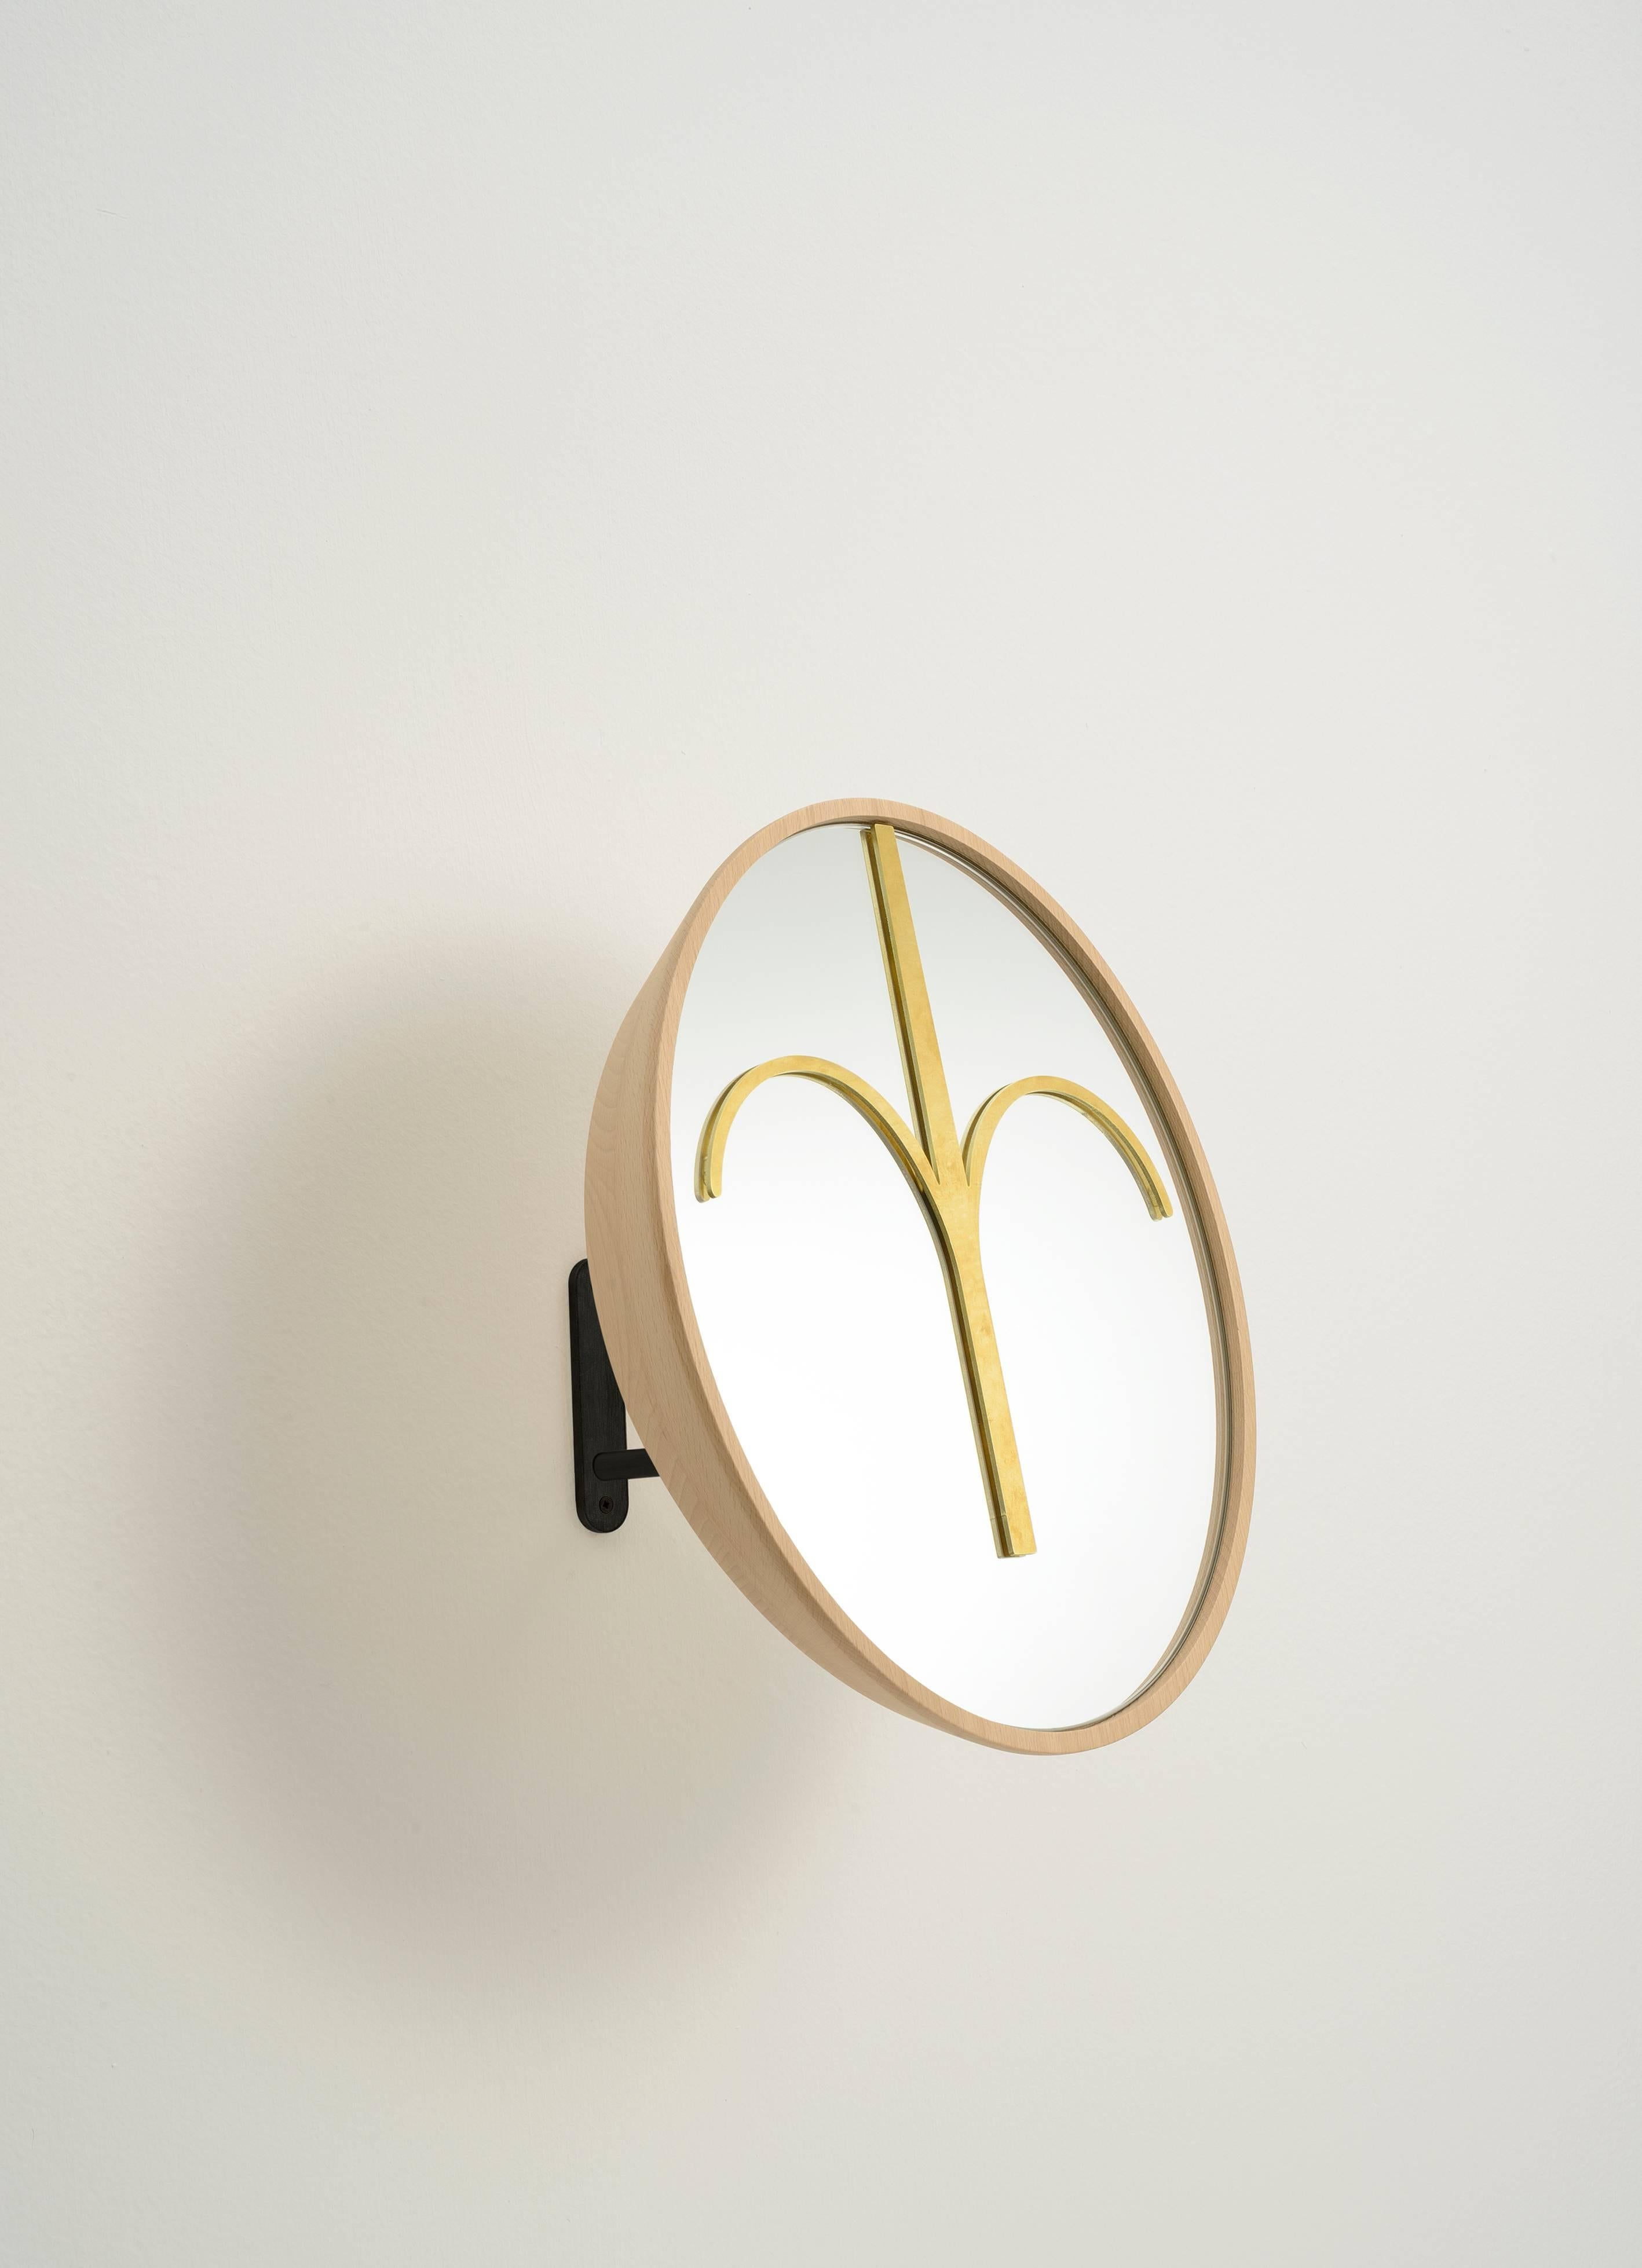 Ein funktioneller Spiegel für ein Ankleidezimmer oder Holzmasken und Skulpturen für Ihr Wohnzimmer oder Ihren Eingangsbereich. Die runde Maske Haua ist aus natürlichem Buchenholz gefertigt, mit einem Spiegelelement aus Messing. Der Sockel ist ein